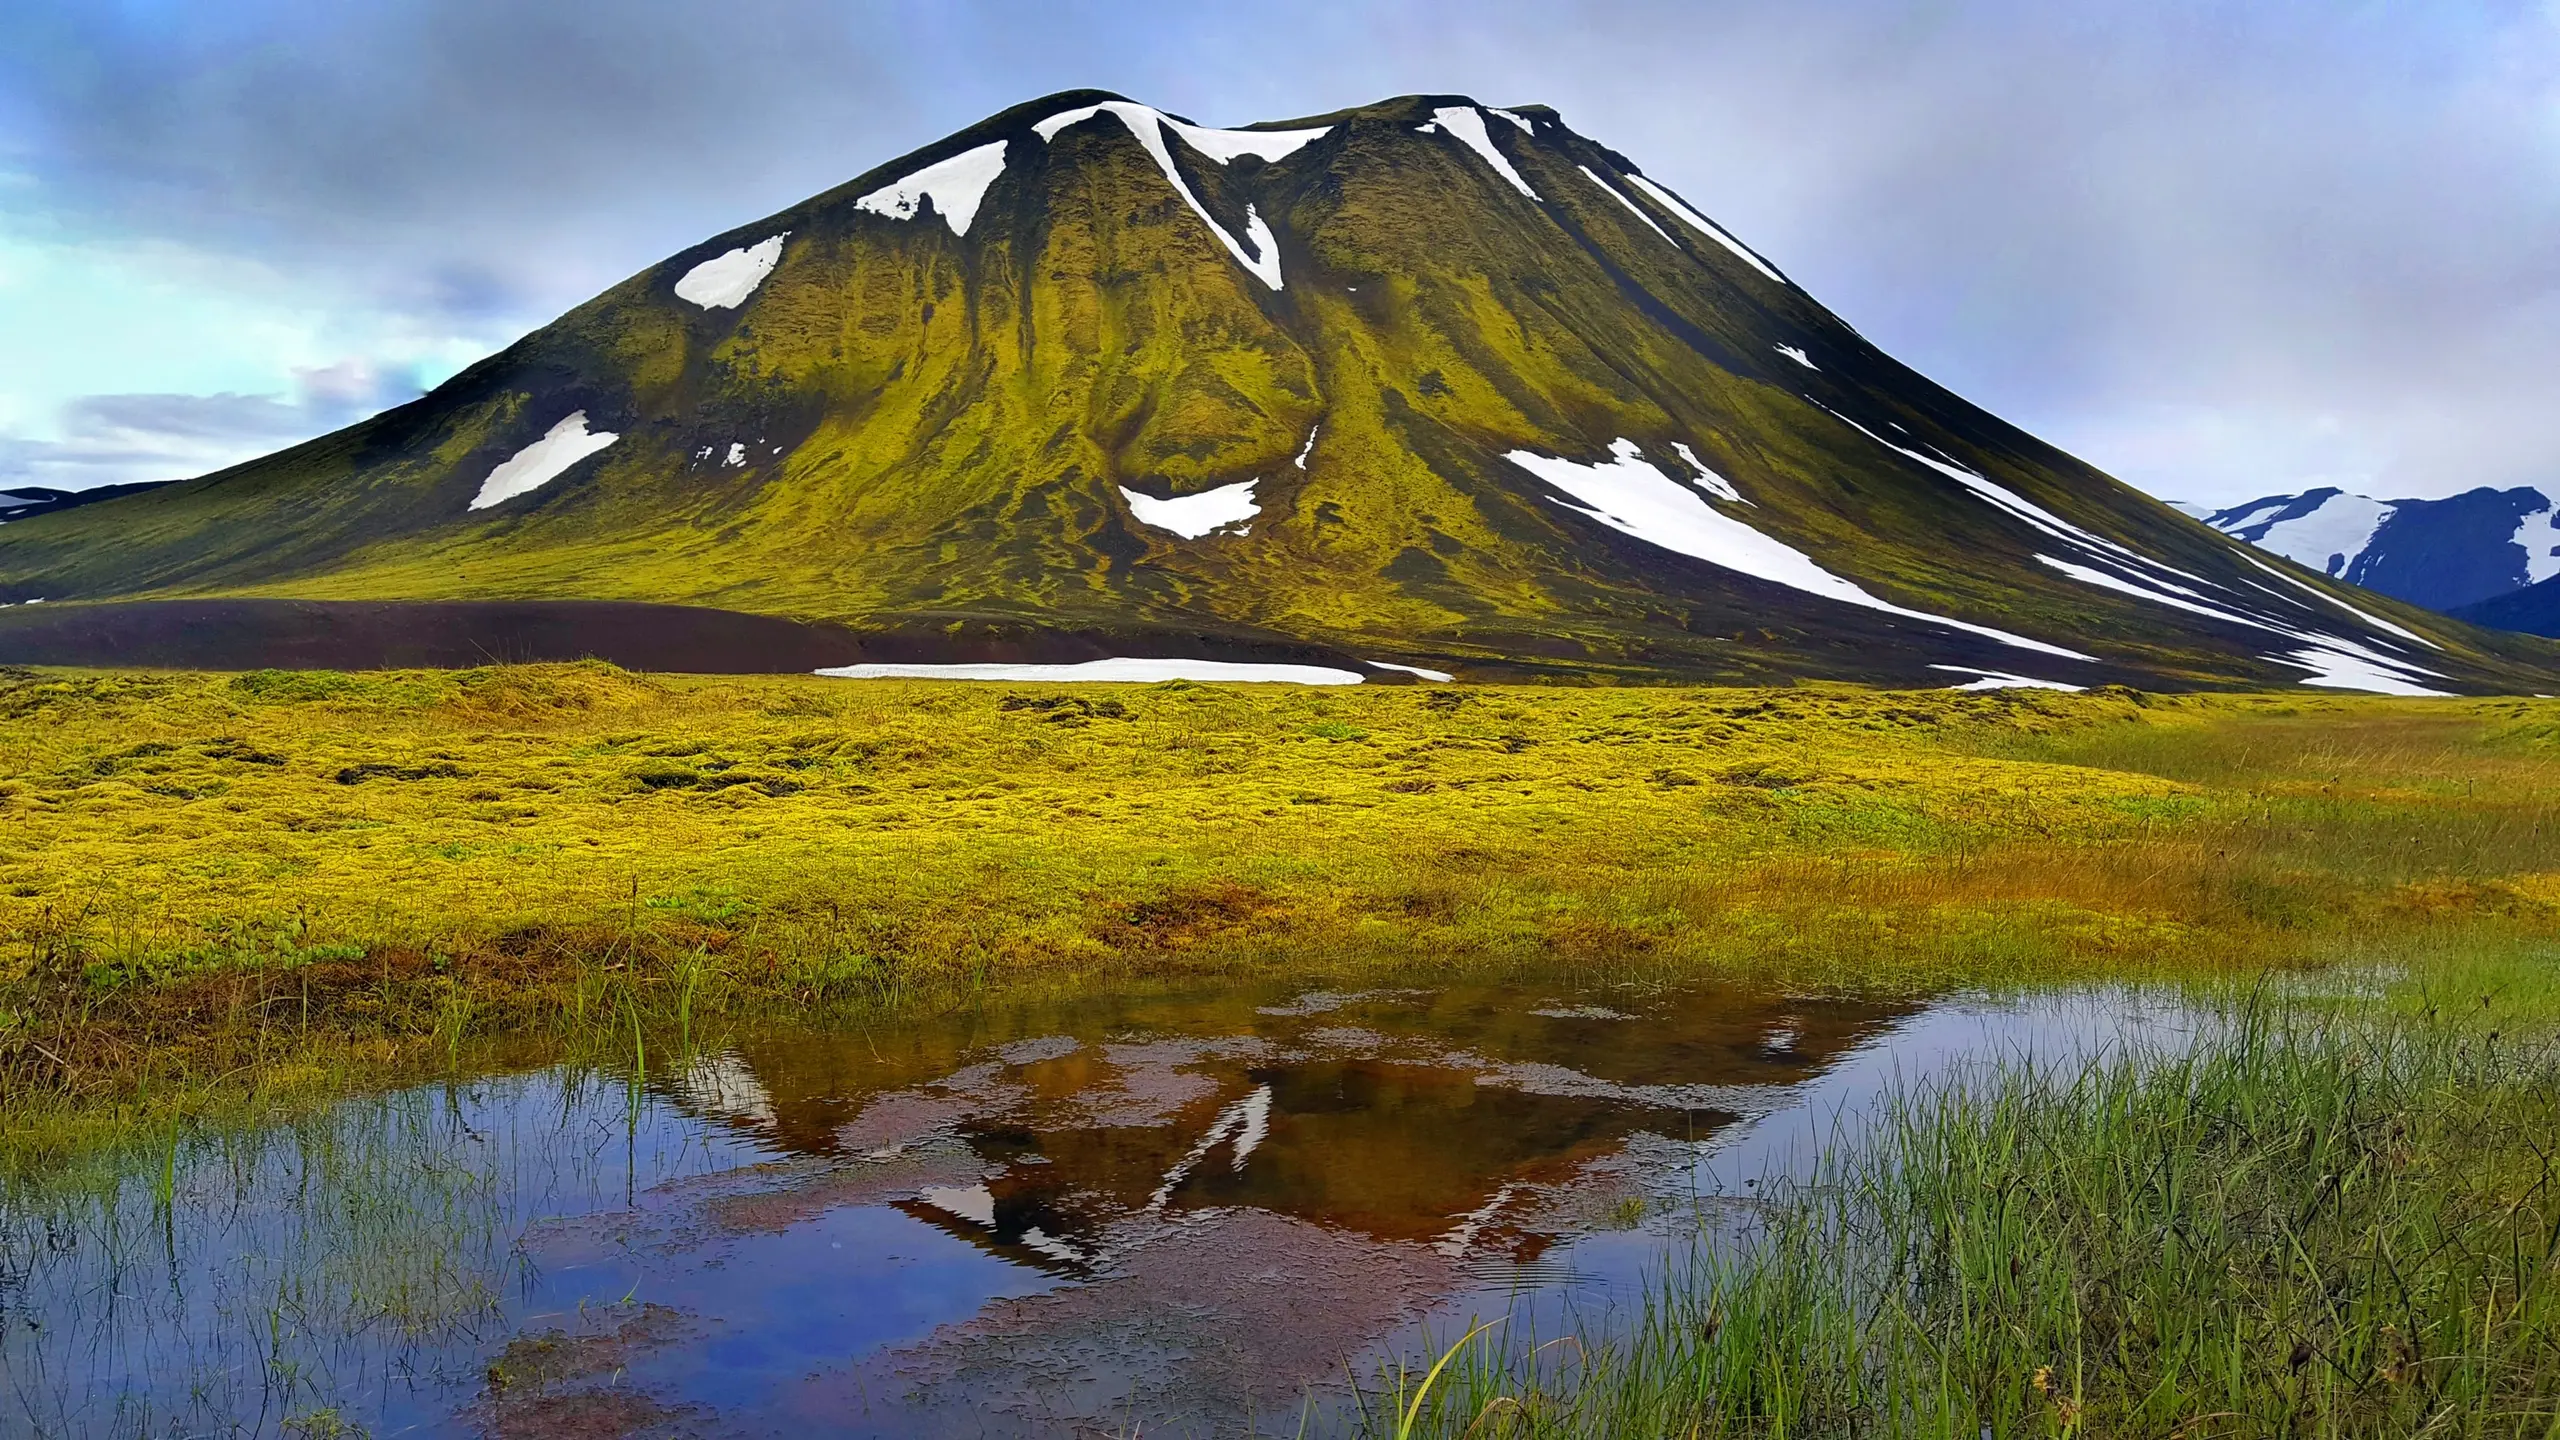 Magisches Island - Leben auf der größten Vulkaninsel der Welt